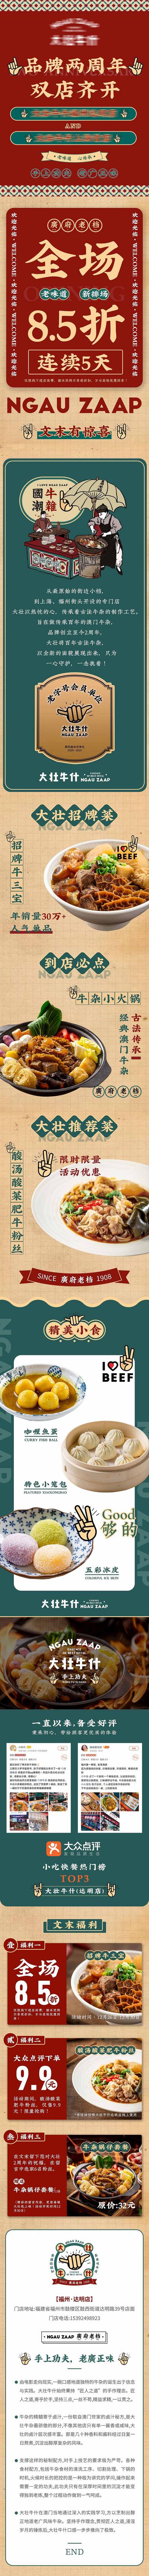 南门网 广告 长图 折扣 美食 开业 庆典 周年 推文